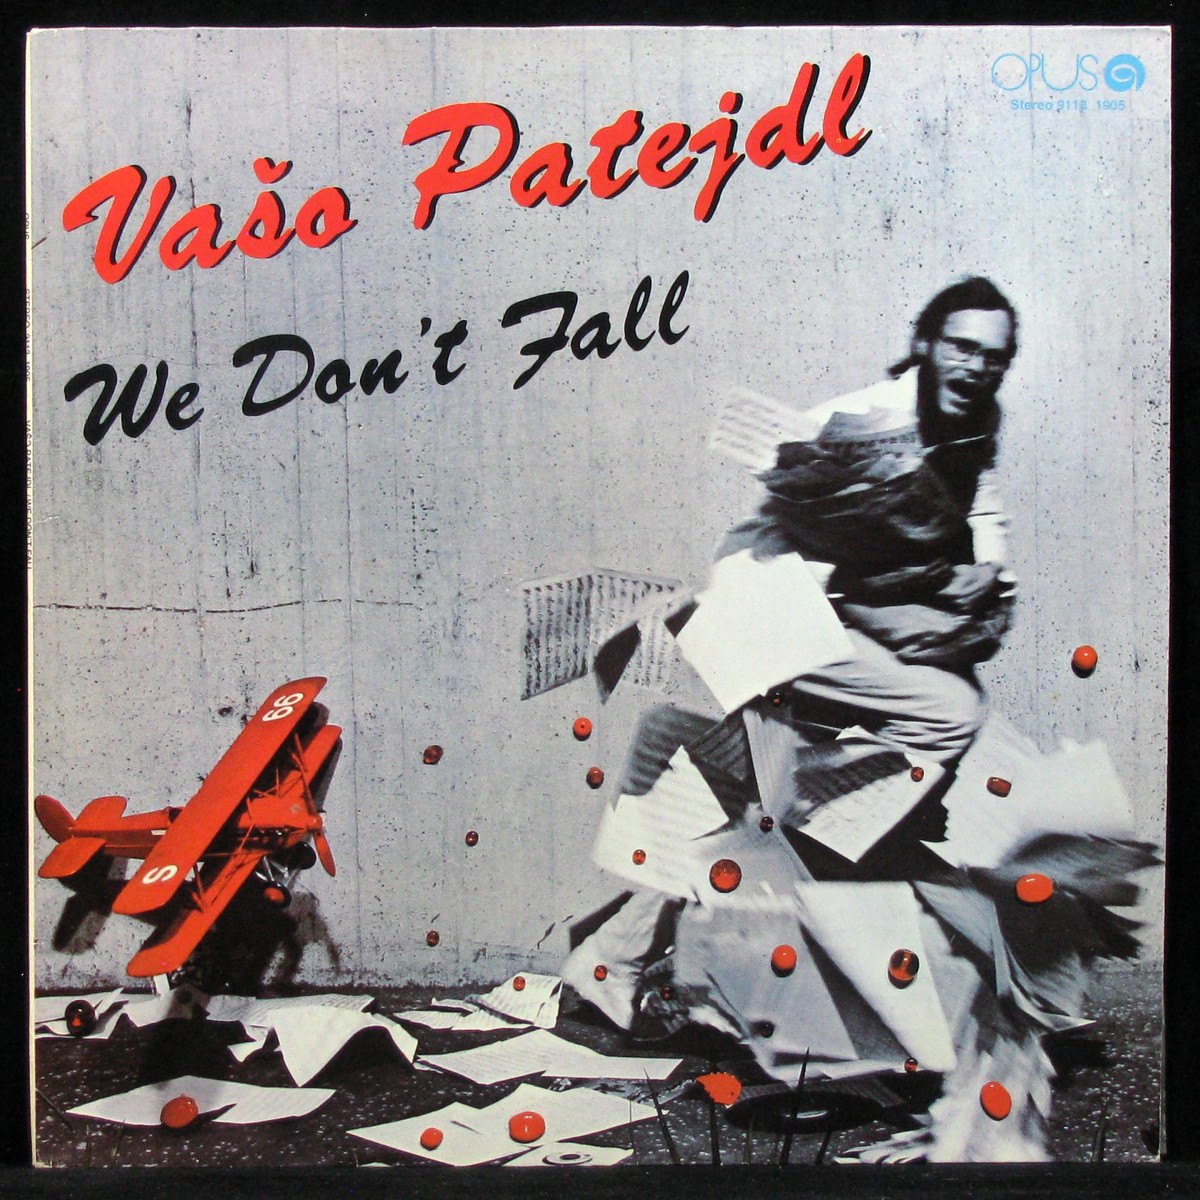 LP Vaso Patejdl — We Don't Fall фото